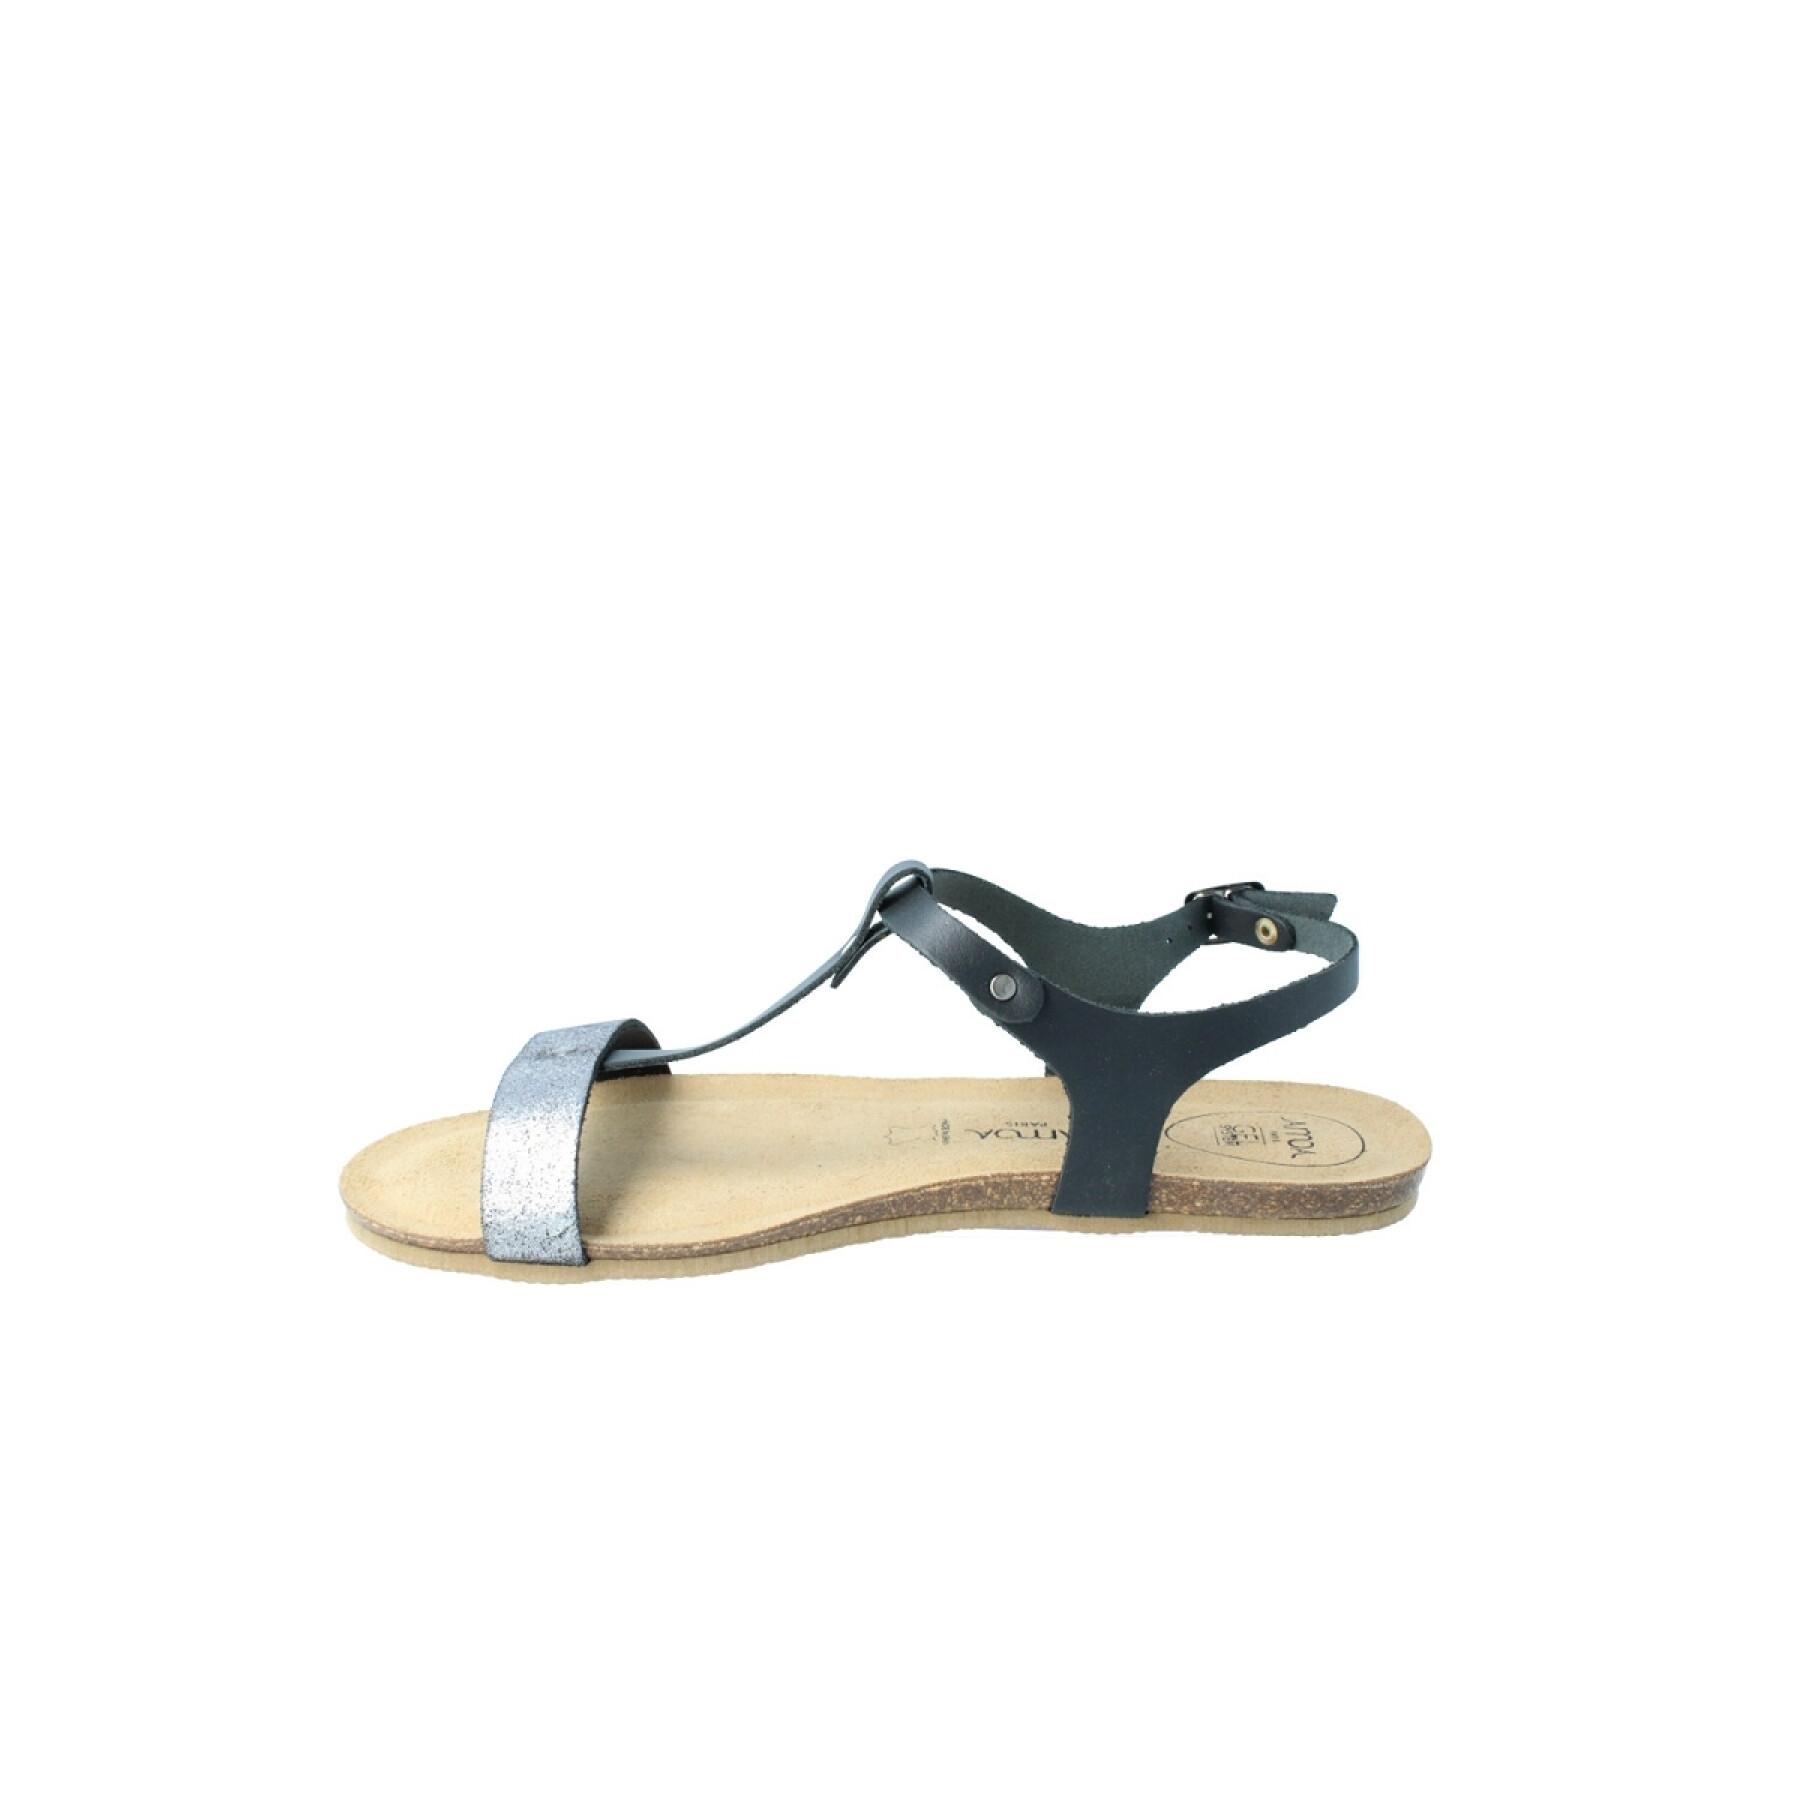 Women's sandals Amoa Casani